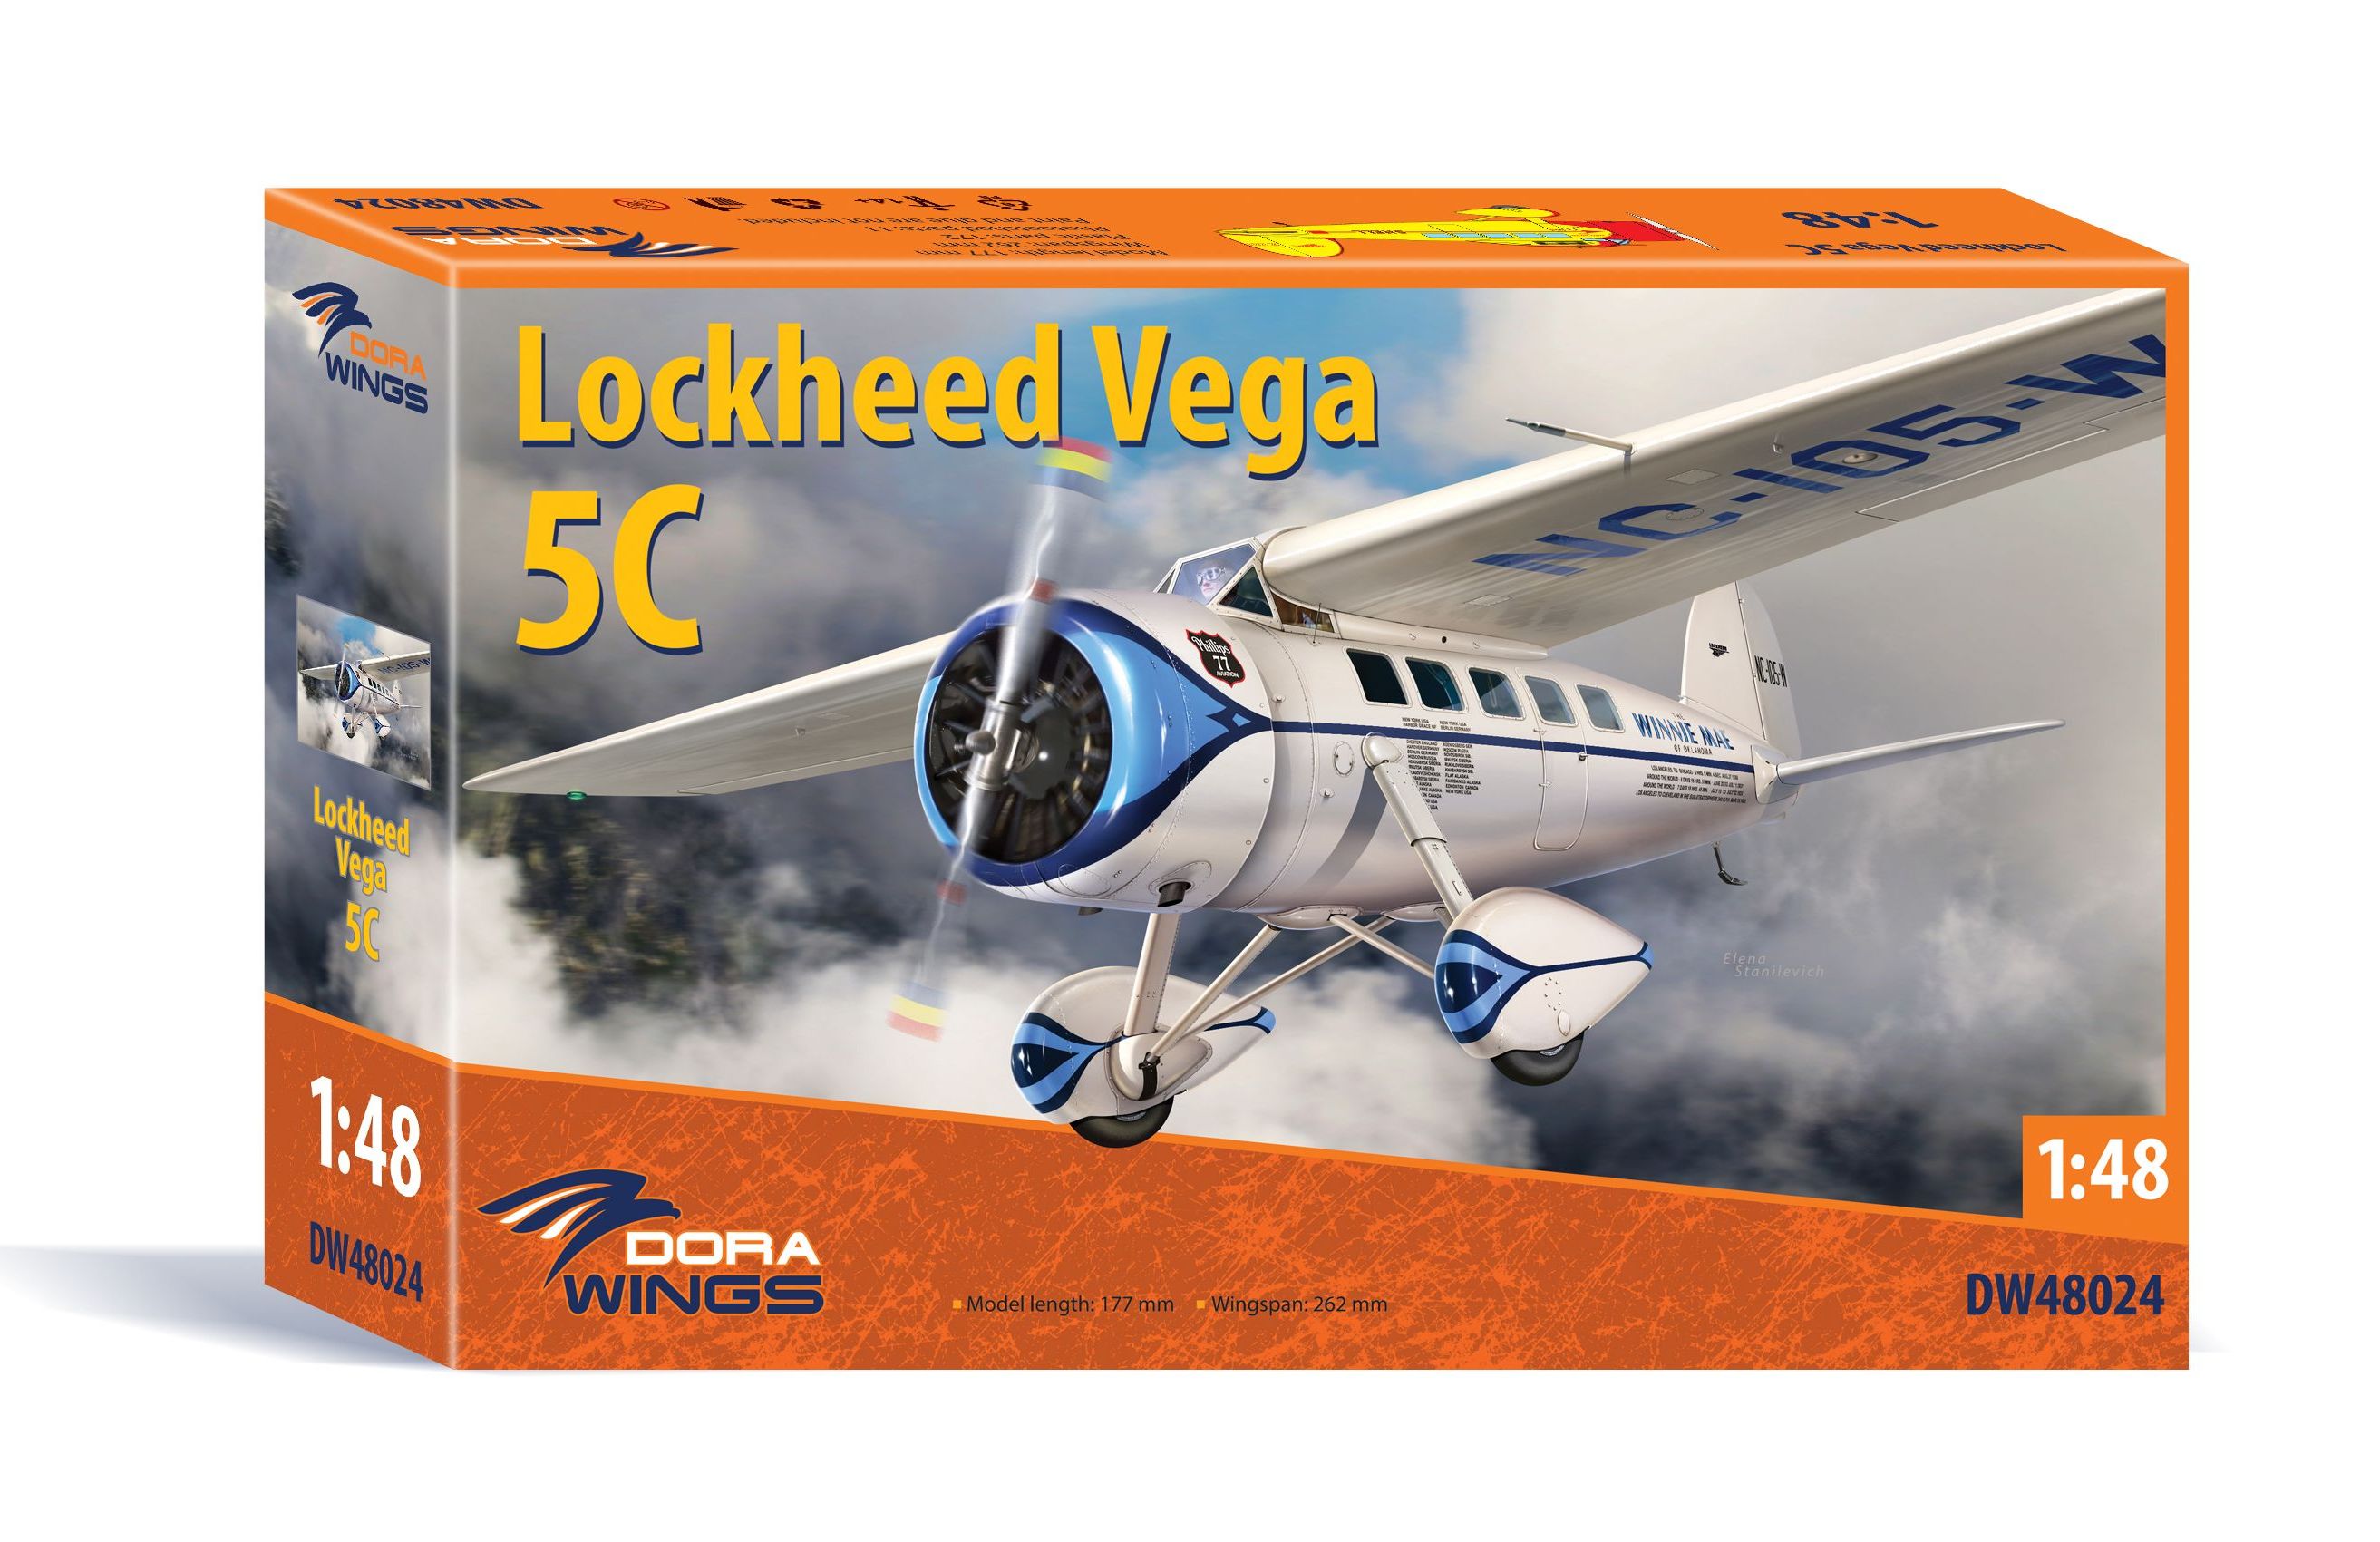 Lockheed Vega 5C